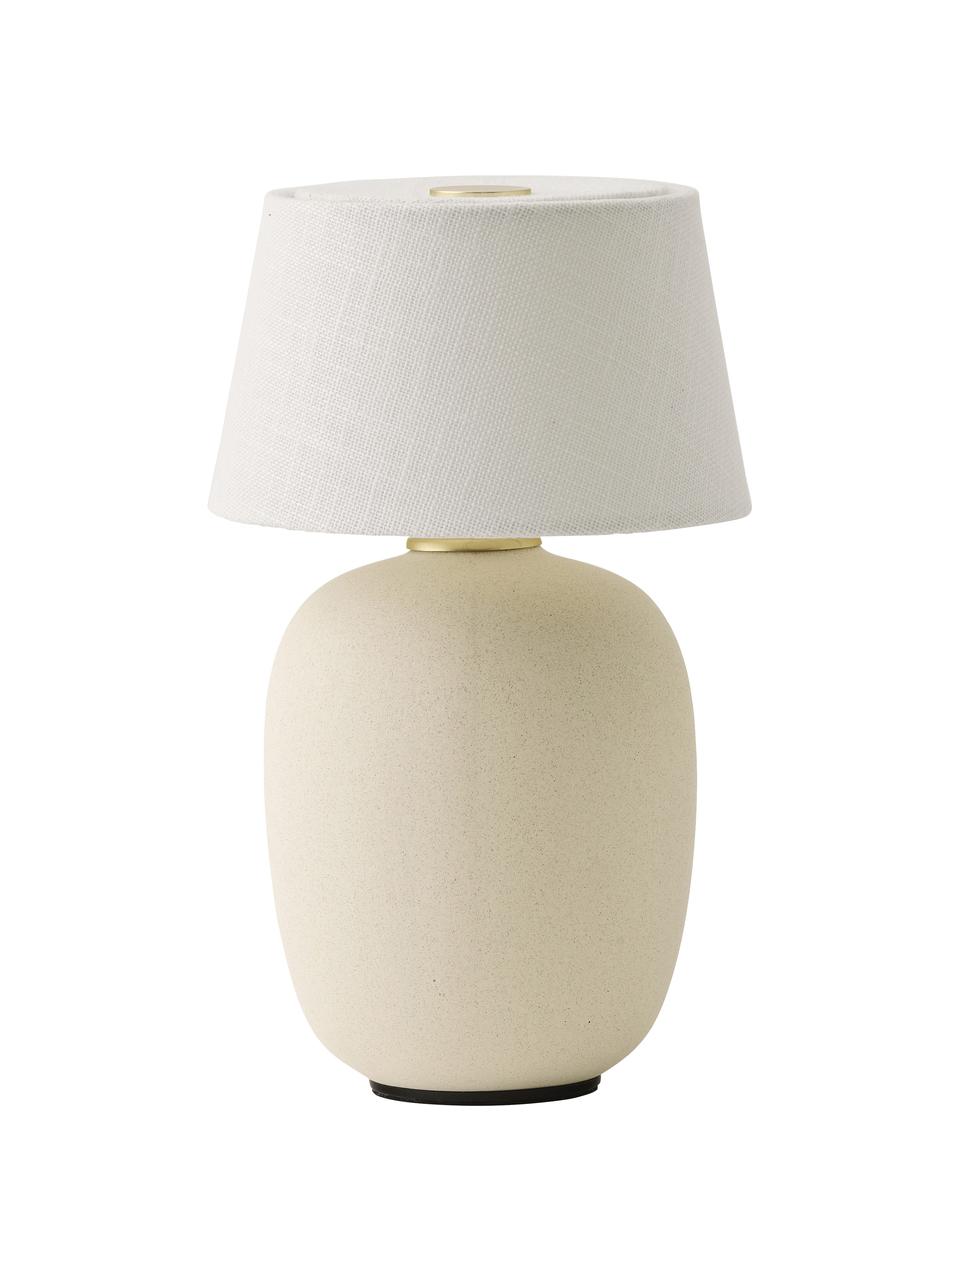 Lampa stołowa z funkcją przyciemniania Nusa, Biały, piaskowy, Ø 12 x W 20 cm